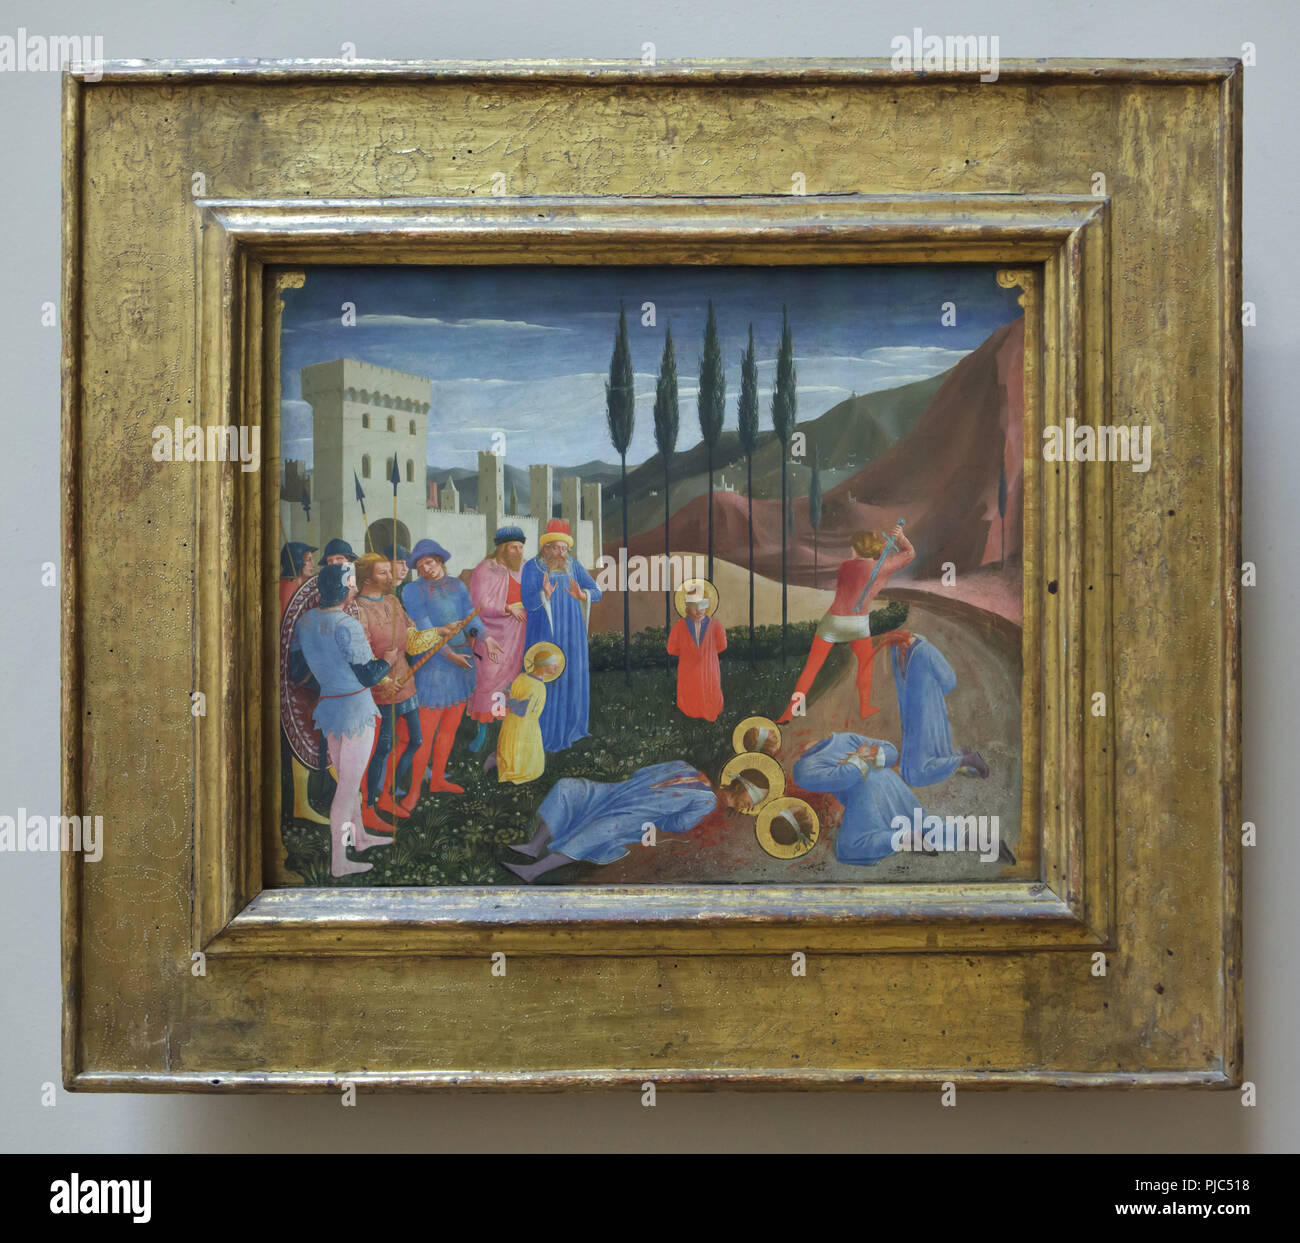 Malerei 'Martyrdom der Heiligen Cosmas und Damian" durch die italienische Frührenaissance Maler Fra Angelico (1438-1443) auf der Anzeige in der Louvre in Paris, Frankreich. Stockfoto